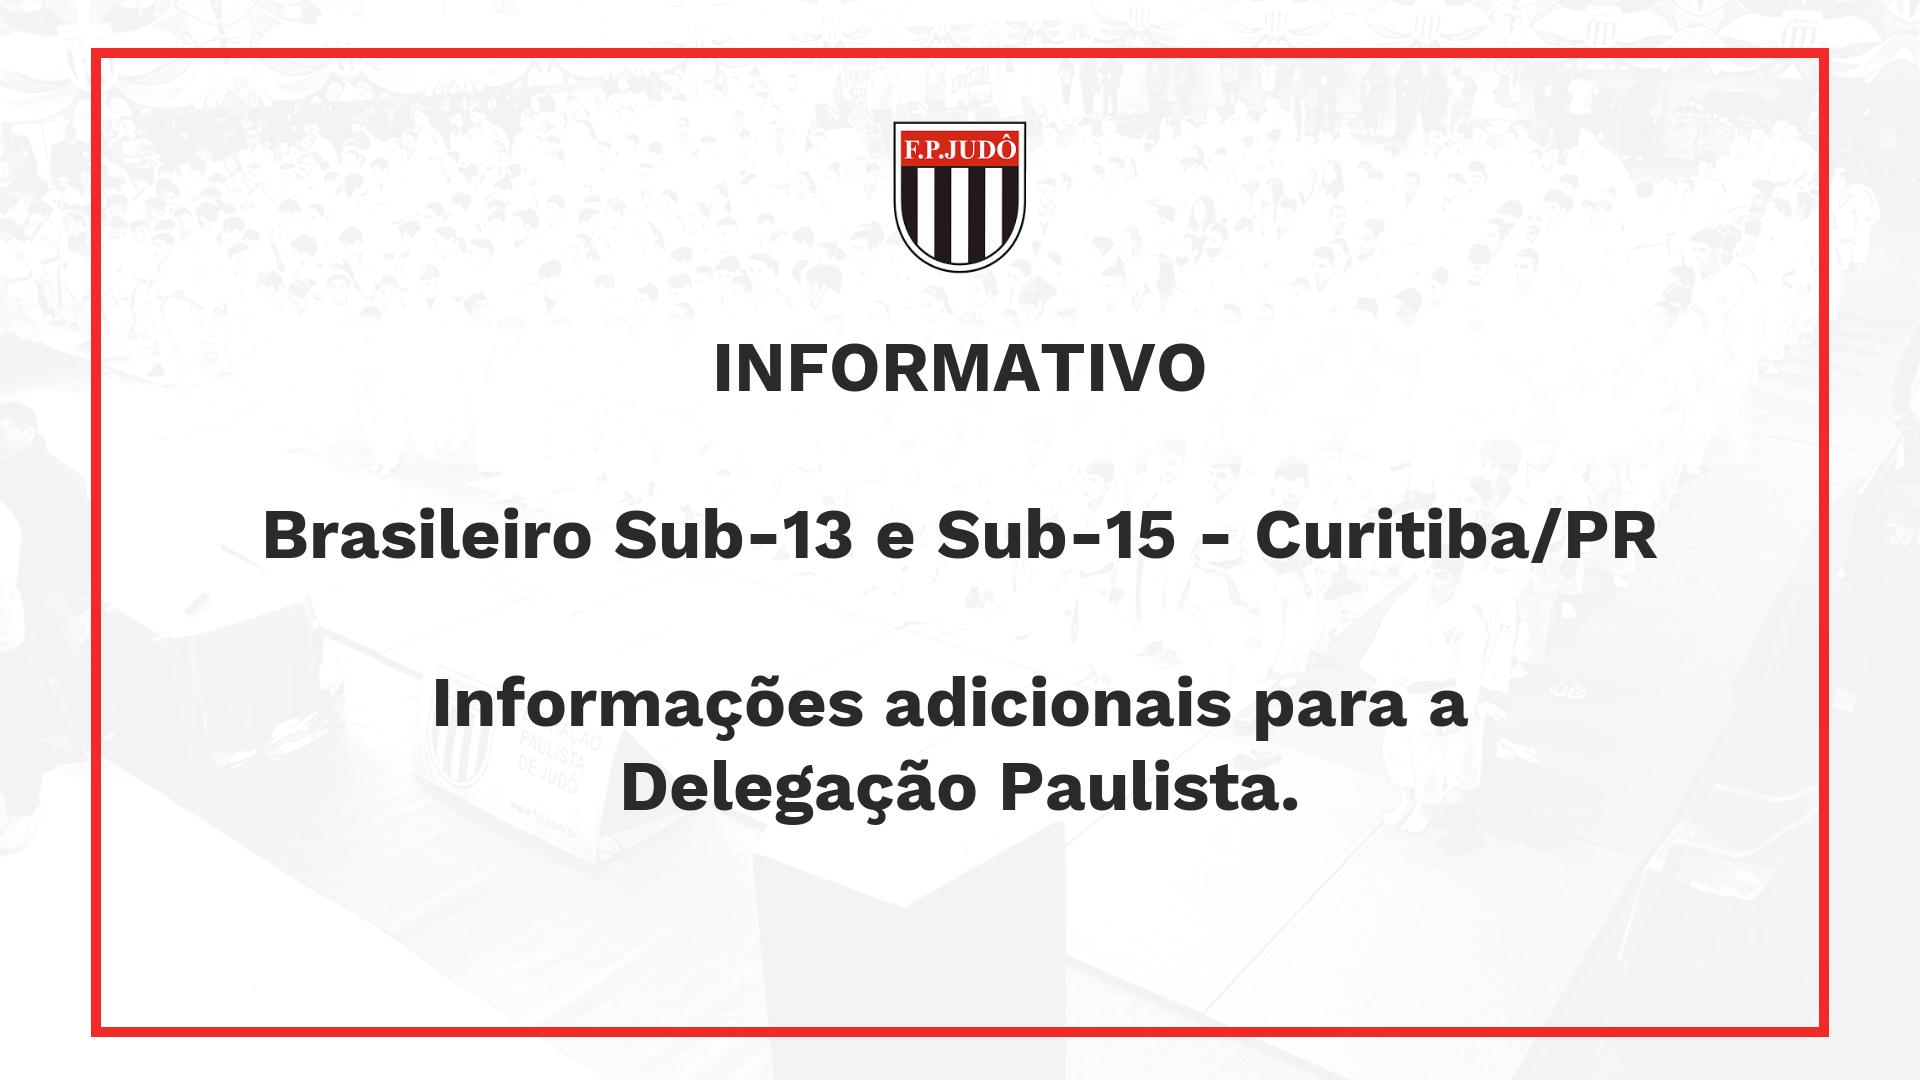 Brasileiro sub-13 e sub-15 - Informações Adicionais